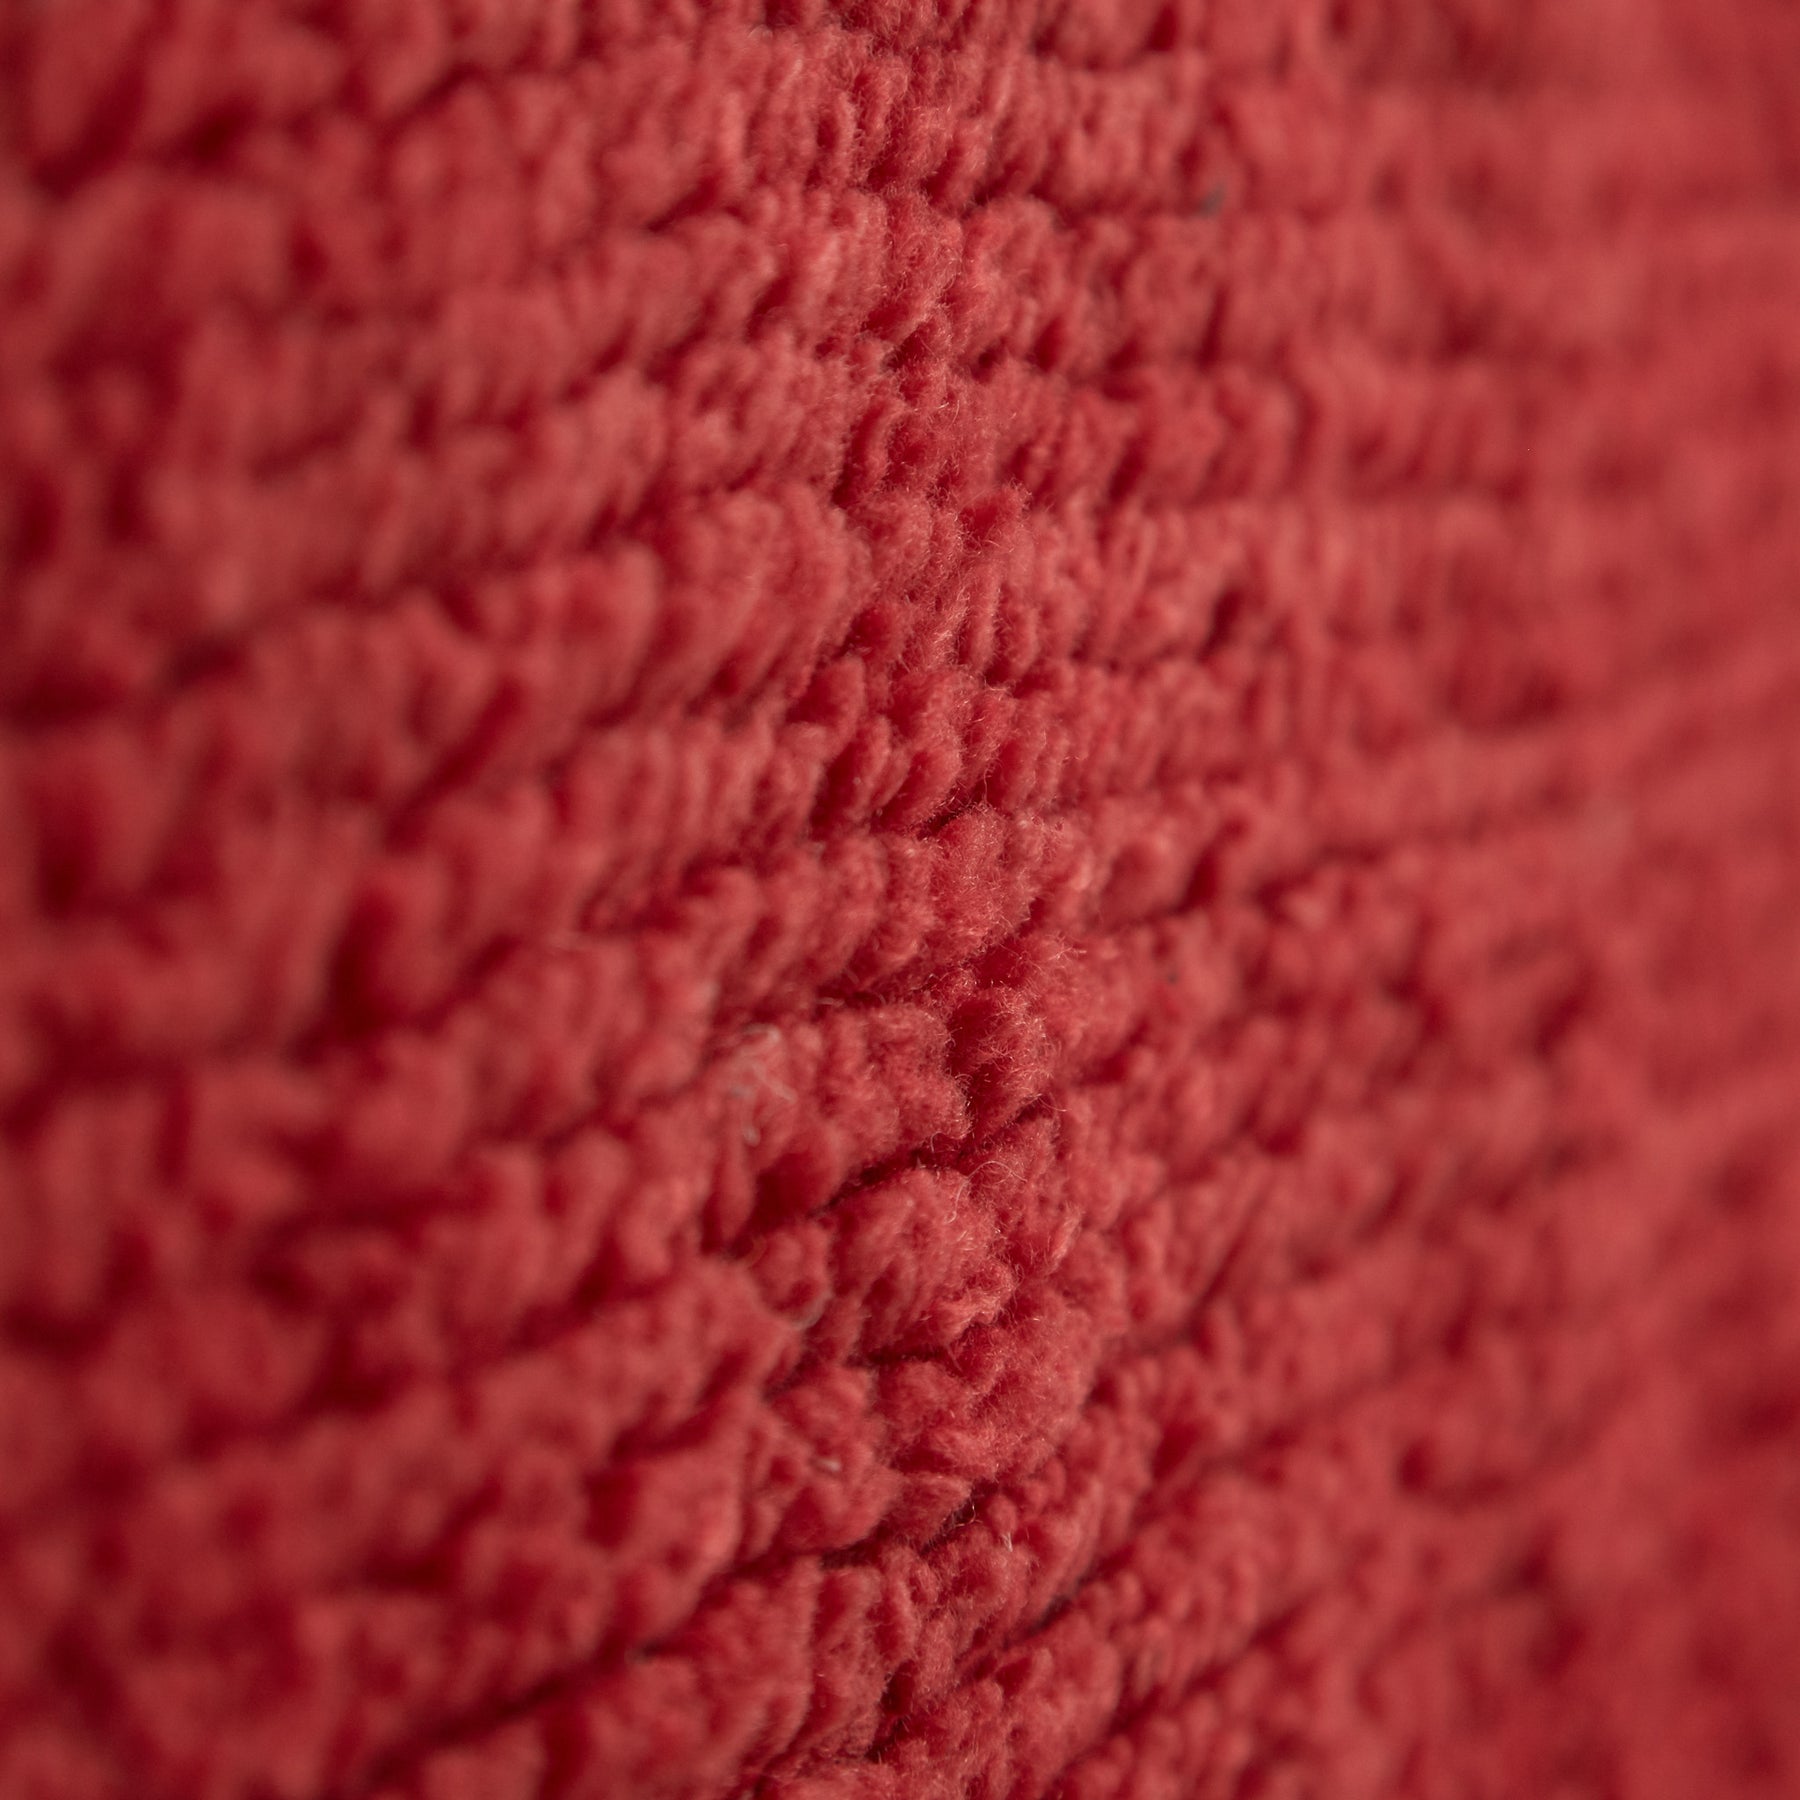 dettaglio della lana tinta di colore rosso di un tappeto vintage